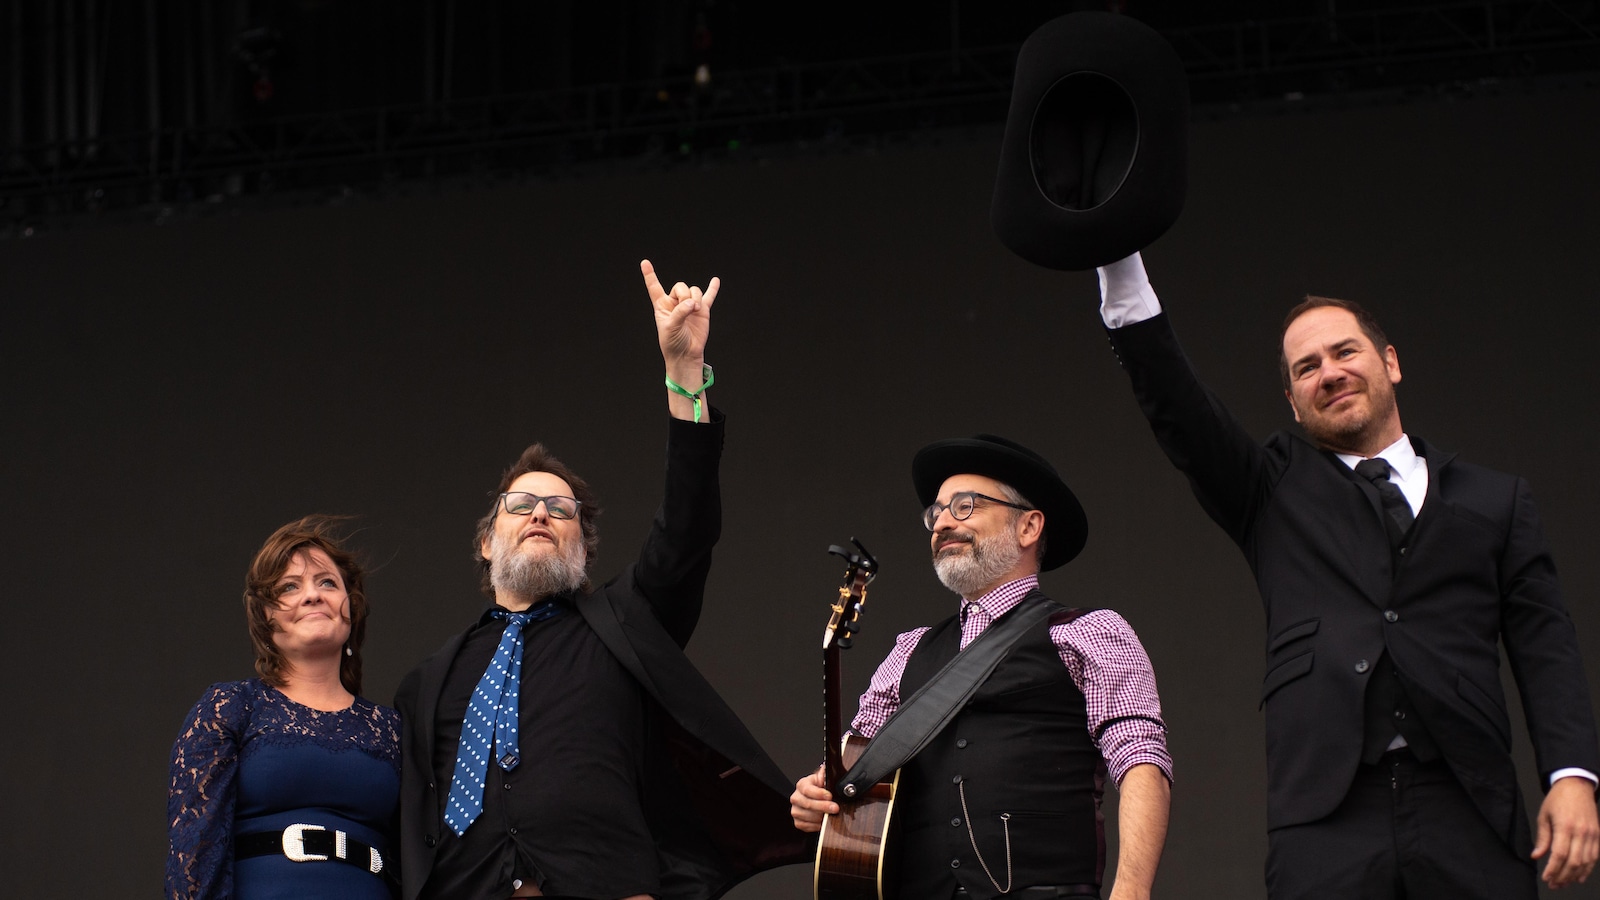 Marie-Annick Lépine, Karl Tremblay, Jean-François Pauzé et Jérôme Dupras étaient émotifs sur scène à la suite de l'annonce de l'annulation de leur spectacle au Festival d'été.